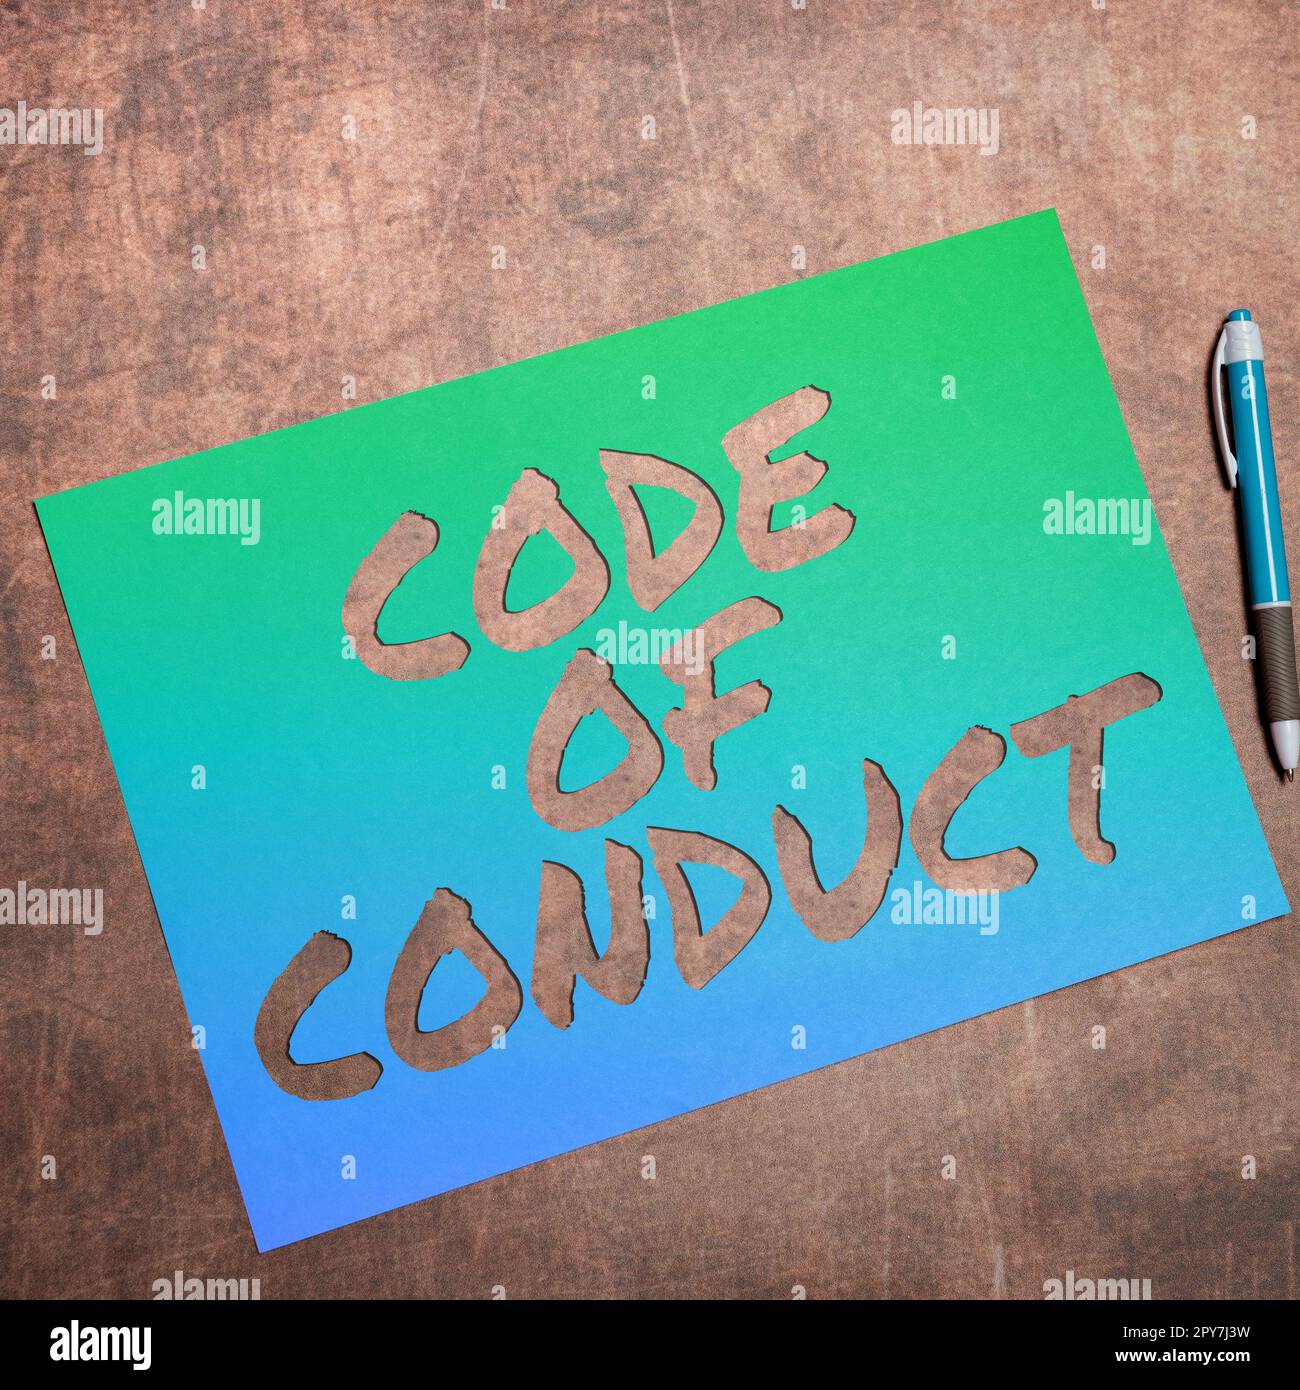 Testo scritto a mano Codice di condotta. Panoramica aziendale regole etiche codici morali principi etici rispetto dei valori Foto Stock